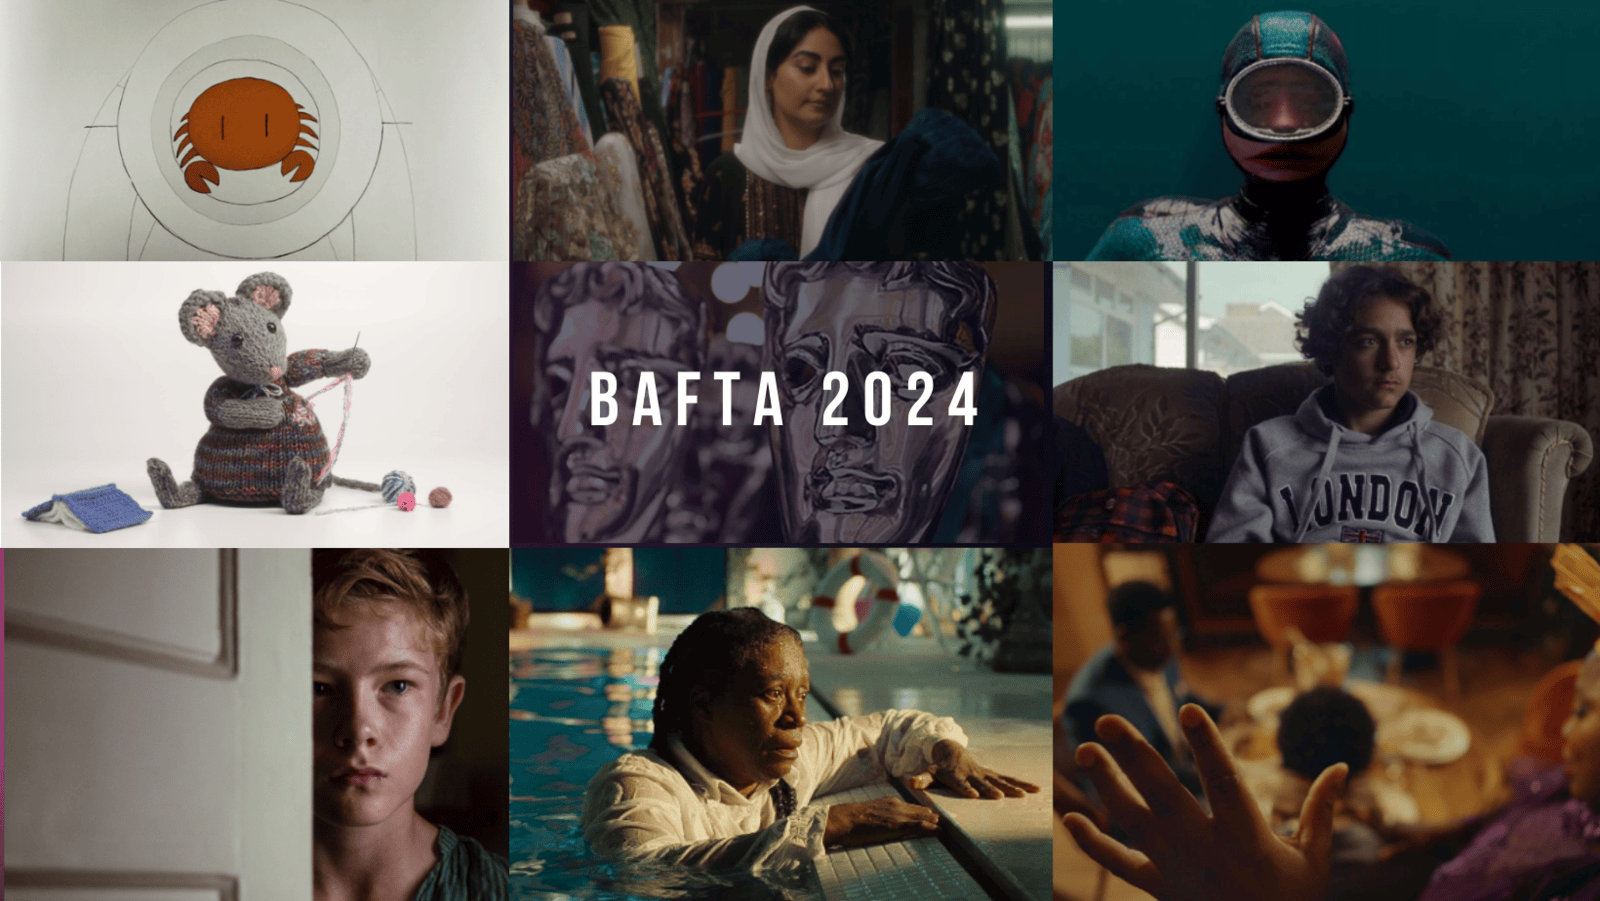 BAFTA 2024 | SHORT FILMS